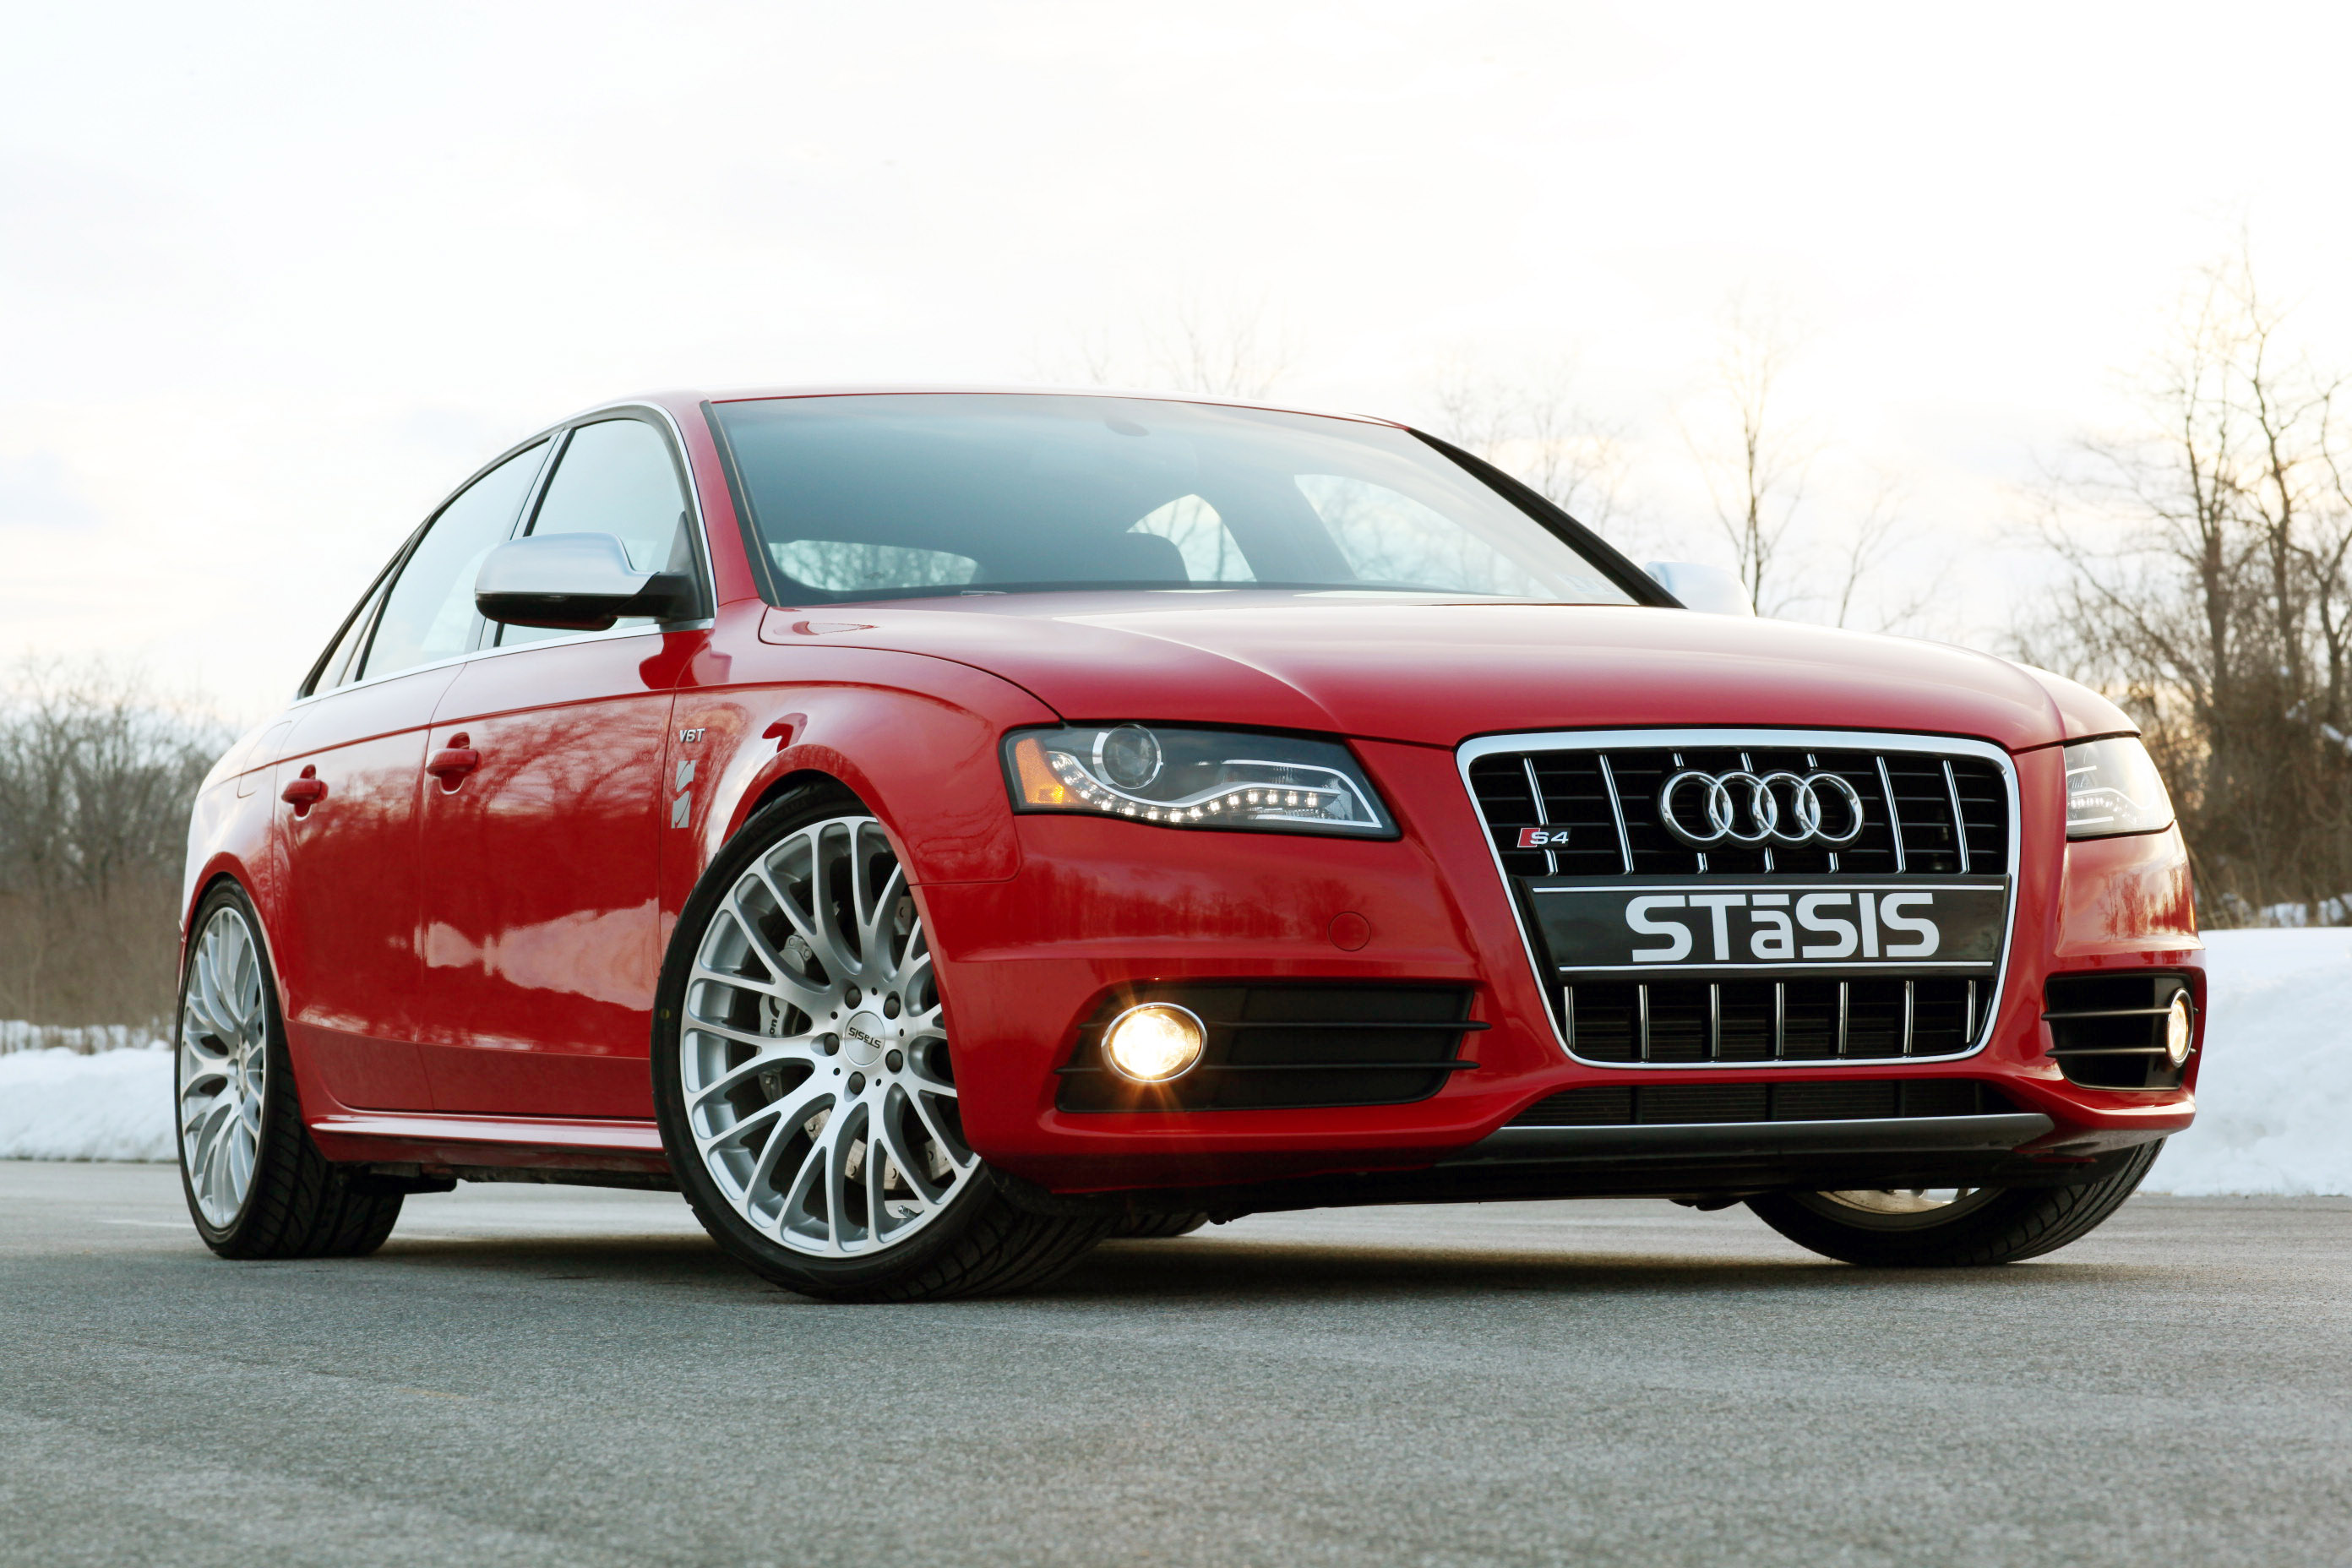 STaSIS Signature Audi S4